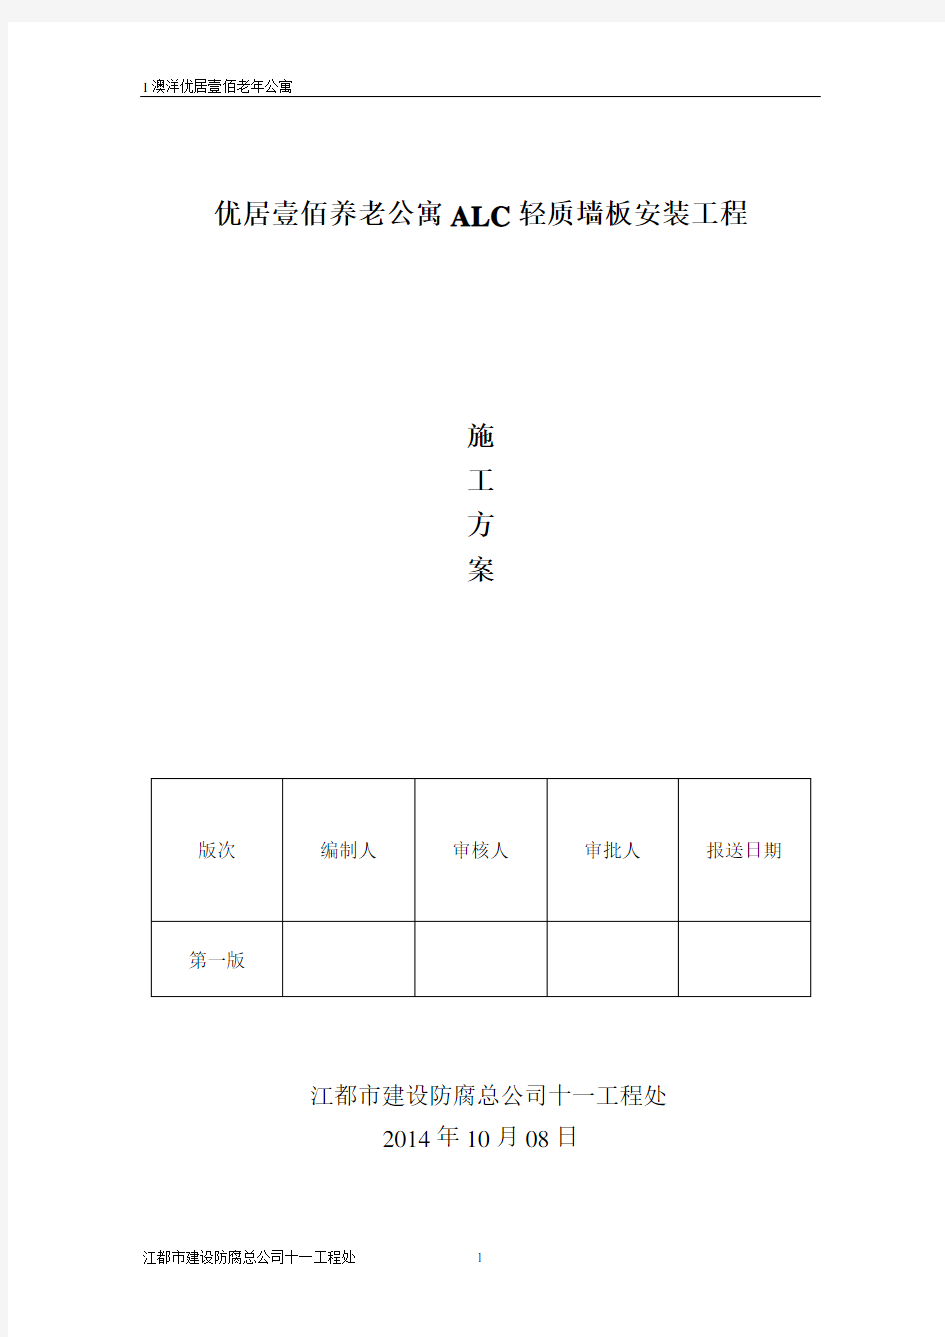 alc板施工方案1